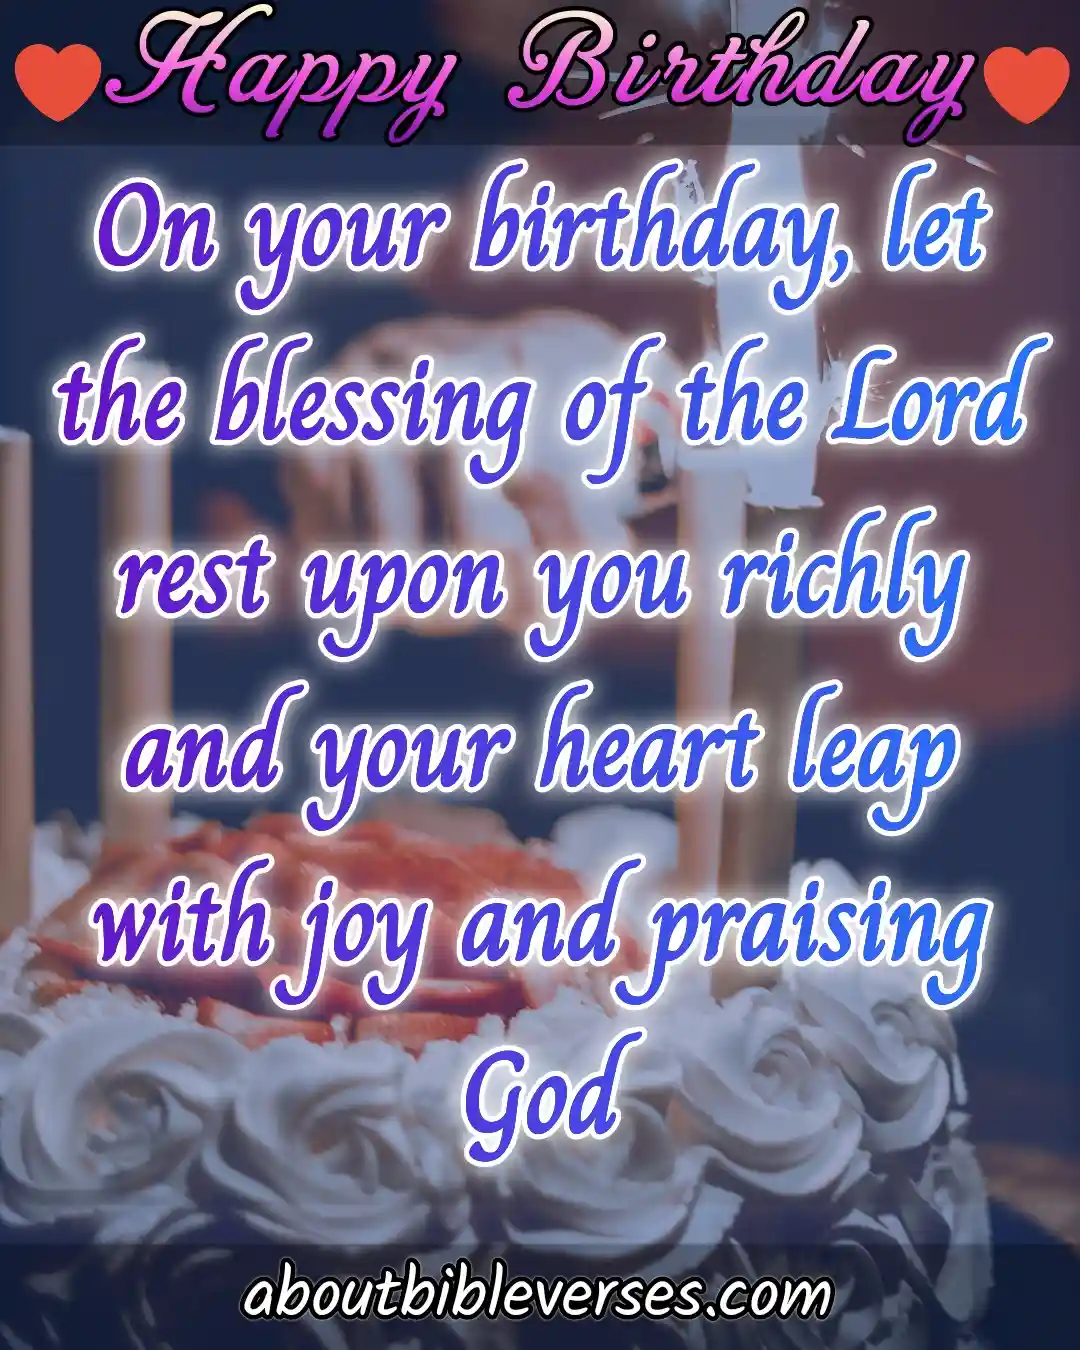 Más de 15 versículos bíblicos de feliz cumpleaños con imágenes, deseos y citas